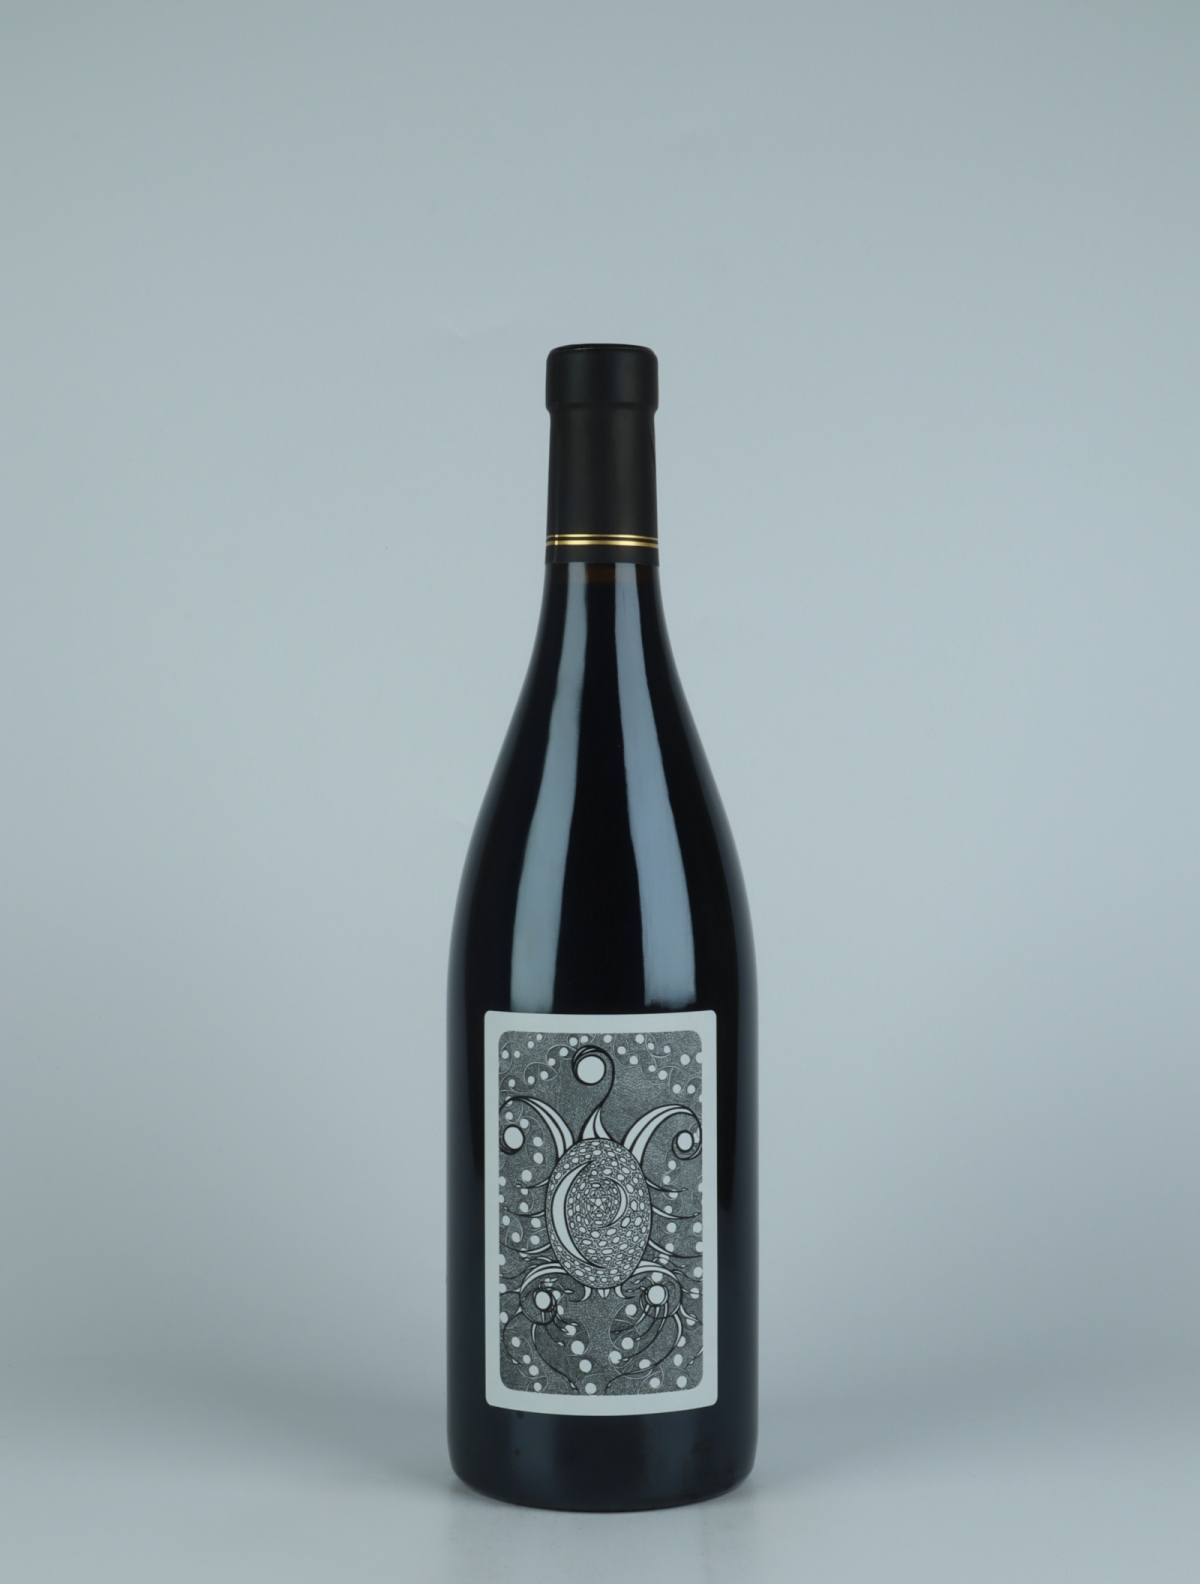 En flaske 2020 Elements Rødvin fra Julien Courtois, Loire i Frankrig